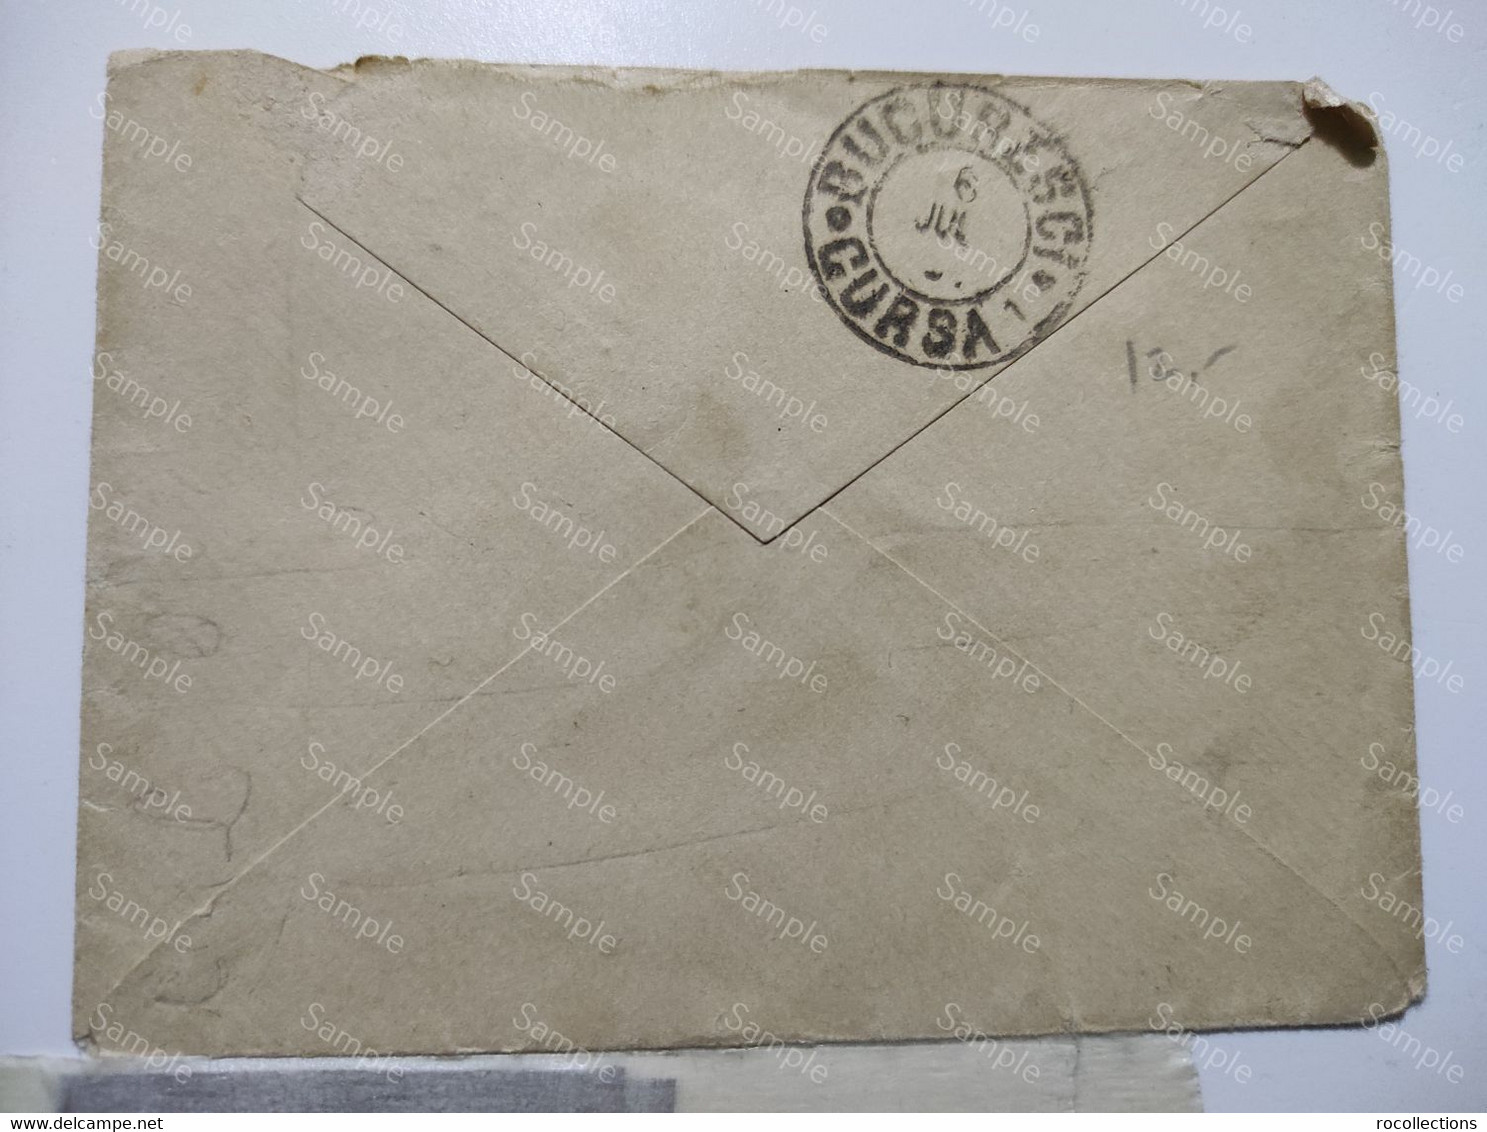 Romania Letter Cover Bucuresti - Ploiesti 1891 - Briefe U. Dokumente